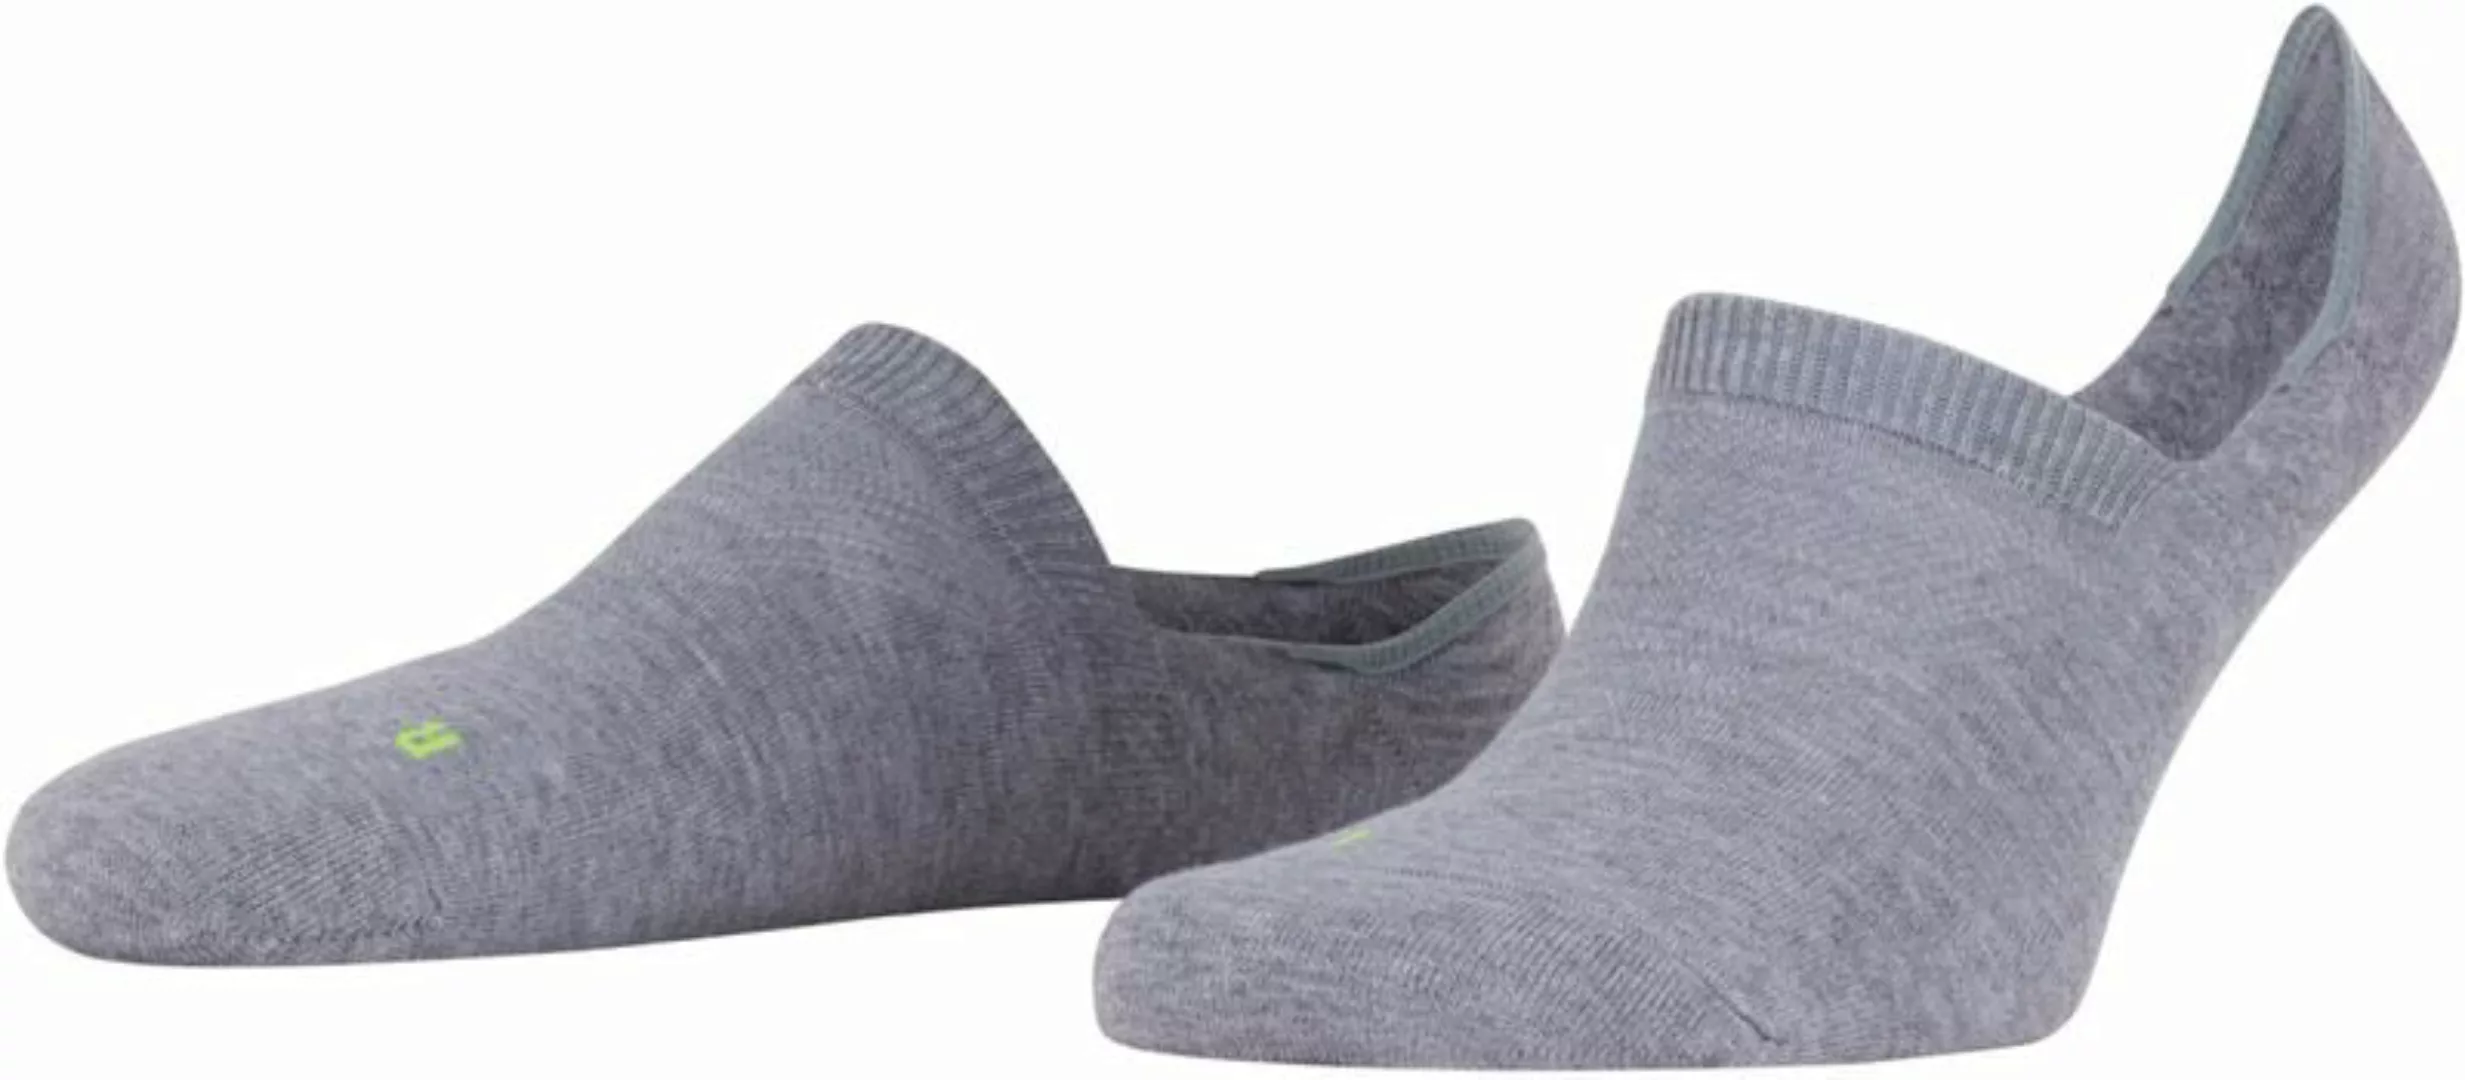 FALKE Cool Kick Antslip Socken Grau - Größe 37-38 günstig online kaufen